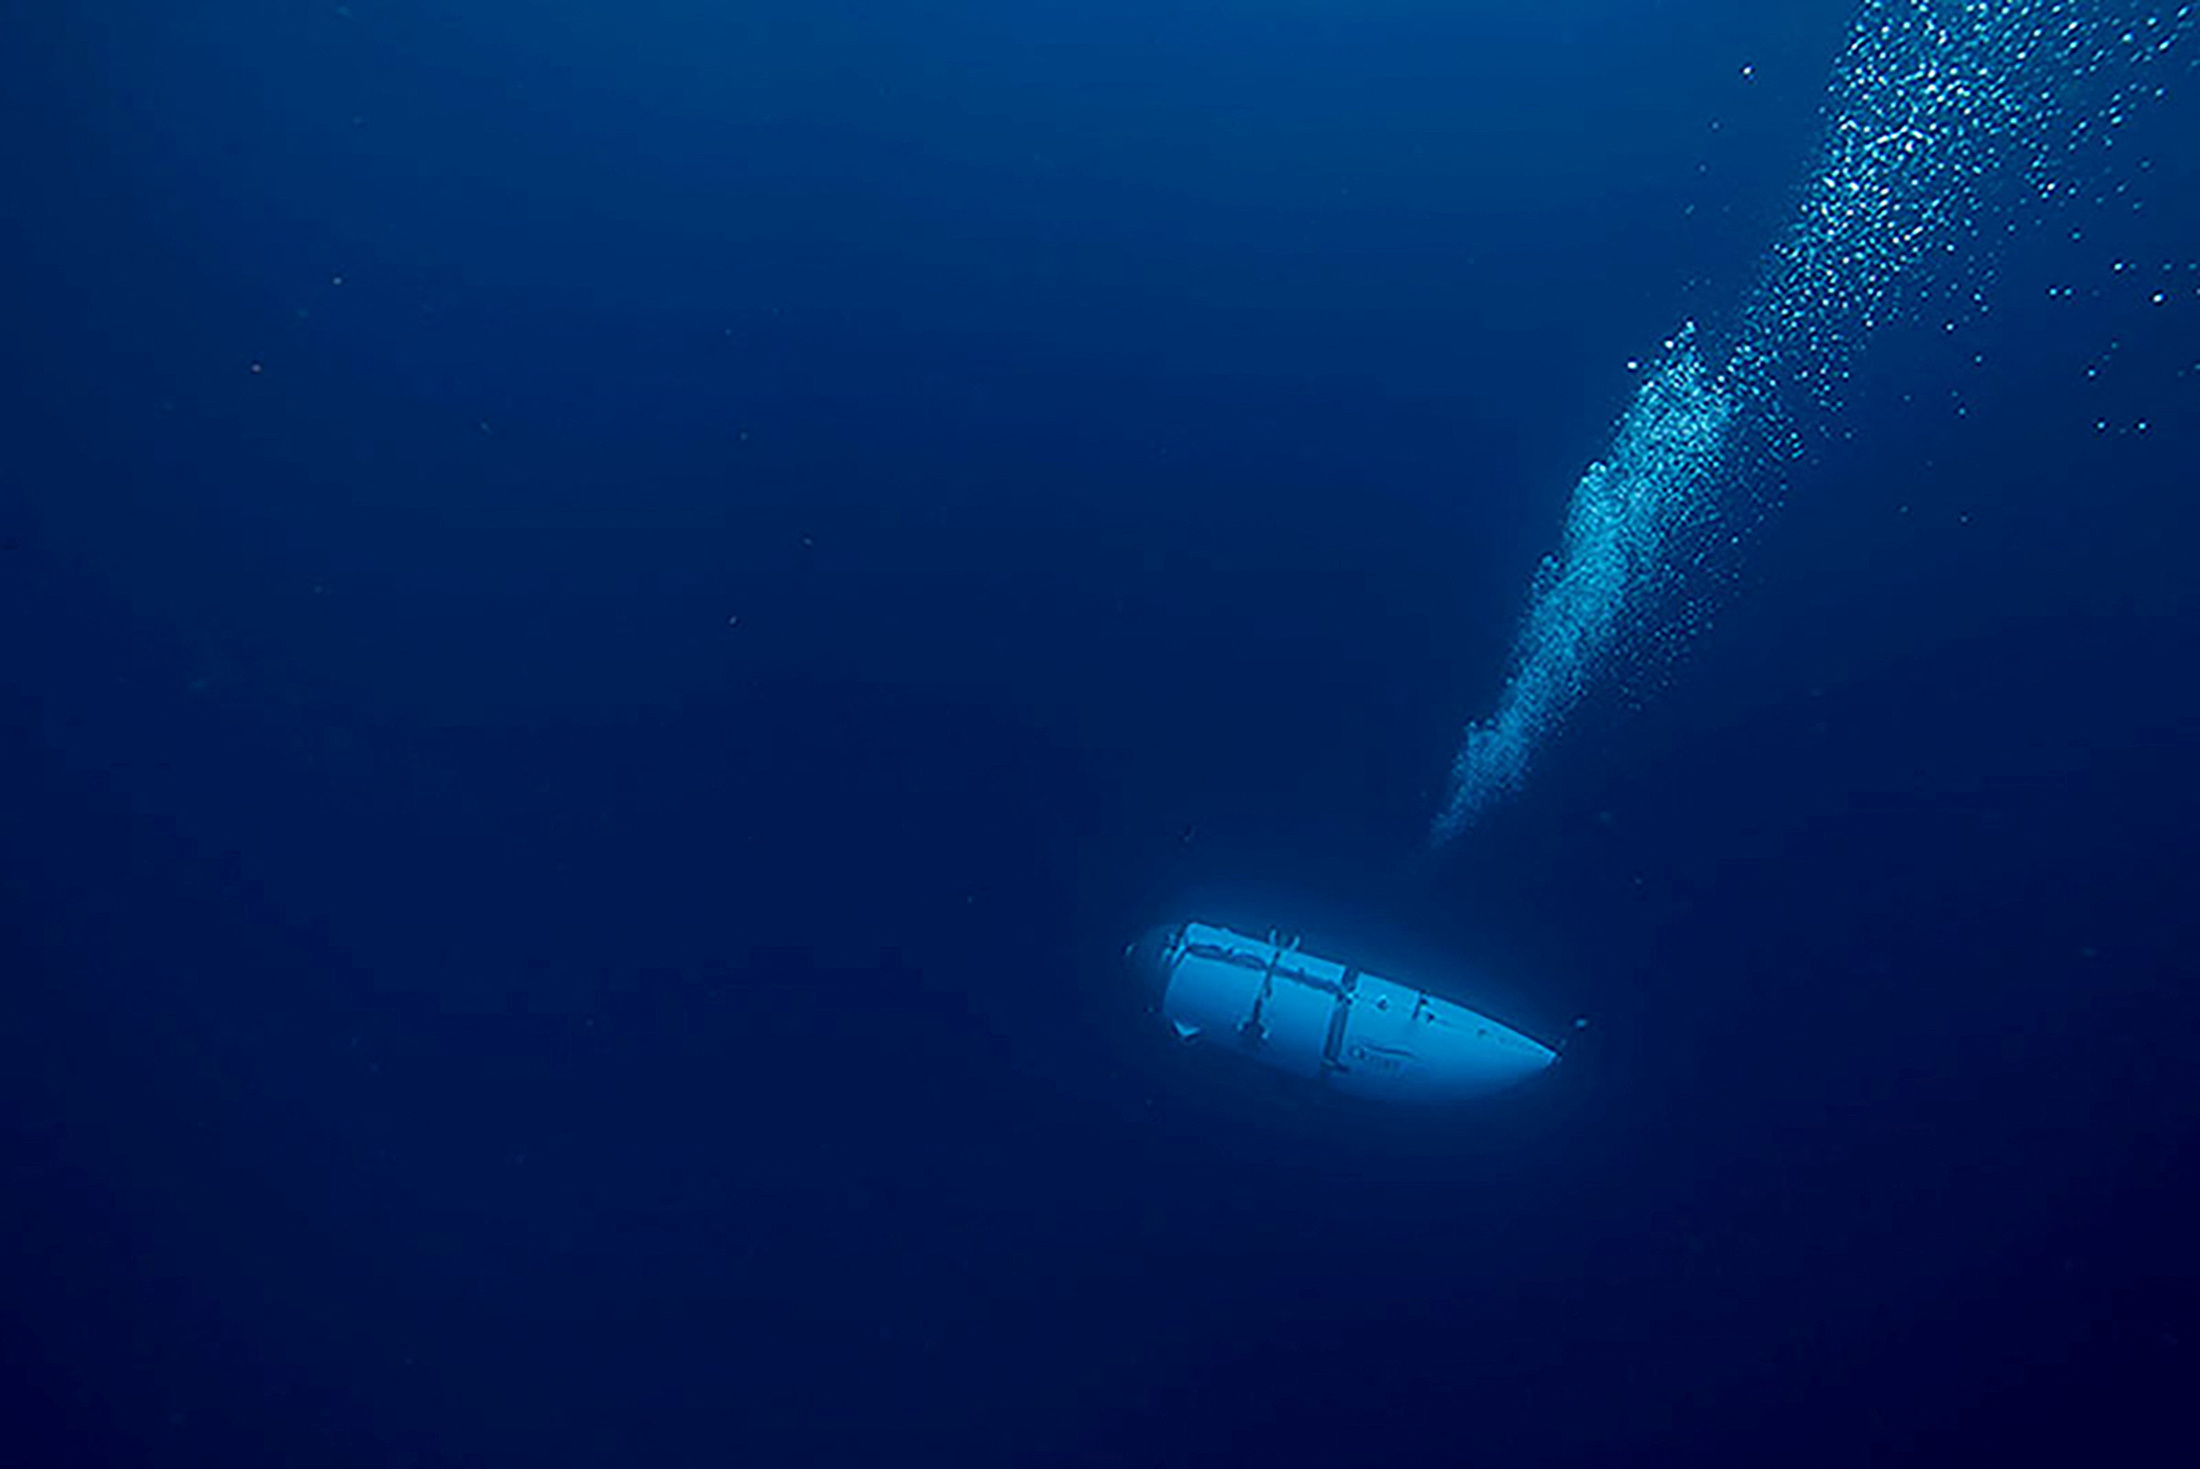 Titan – υποβρύχιο: Το τελευταίο βίντεο πριν από την μοιραία κάθοδο στο ναυάγιο του Τιτανικού